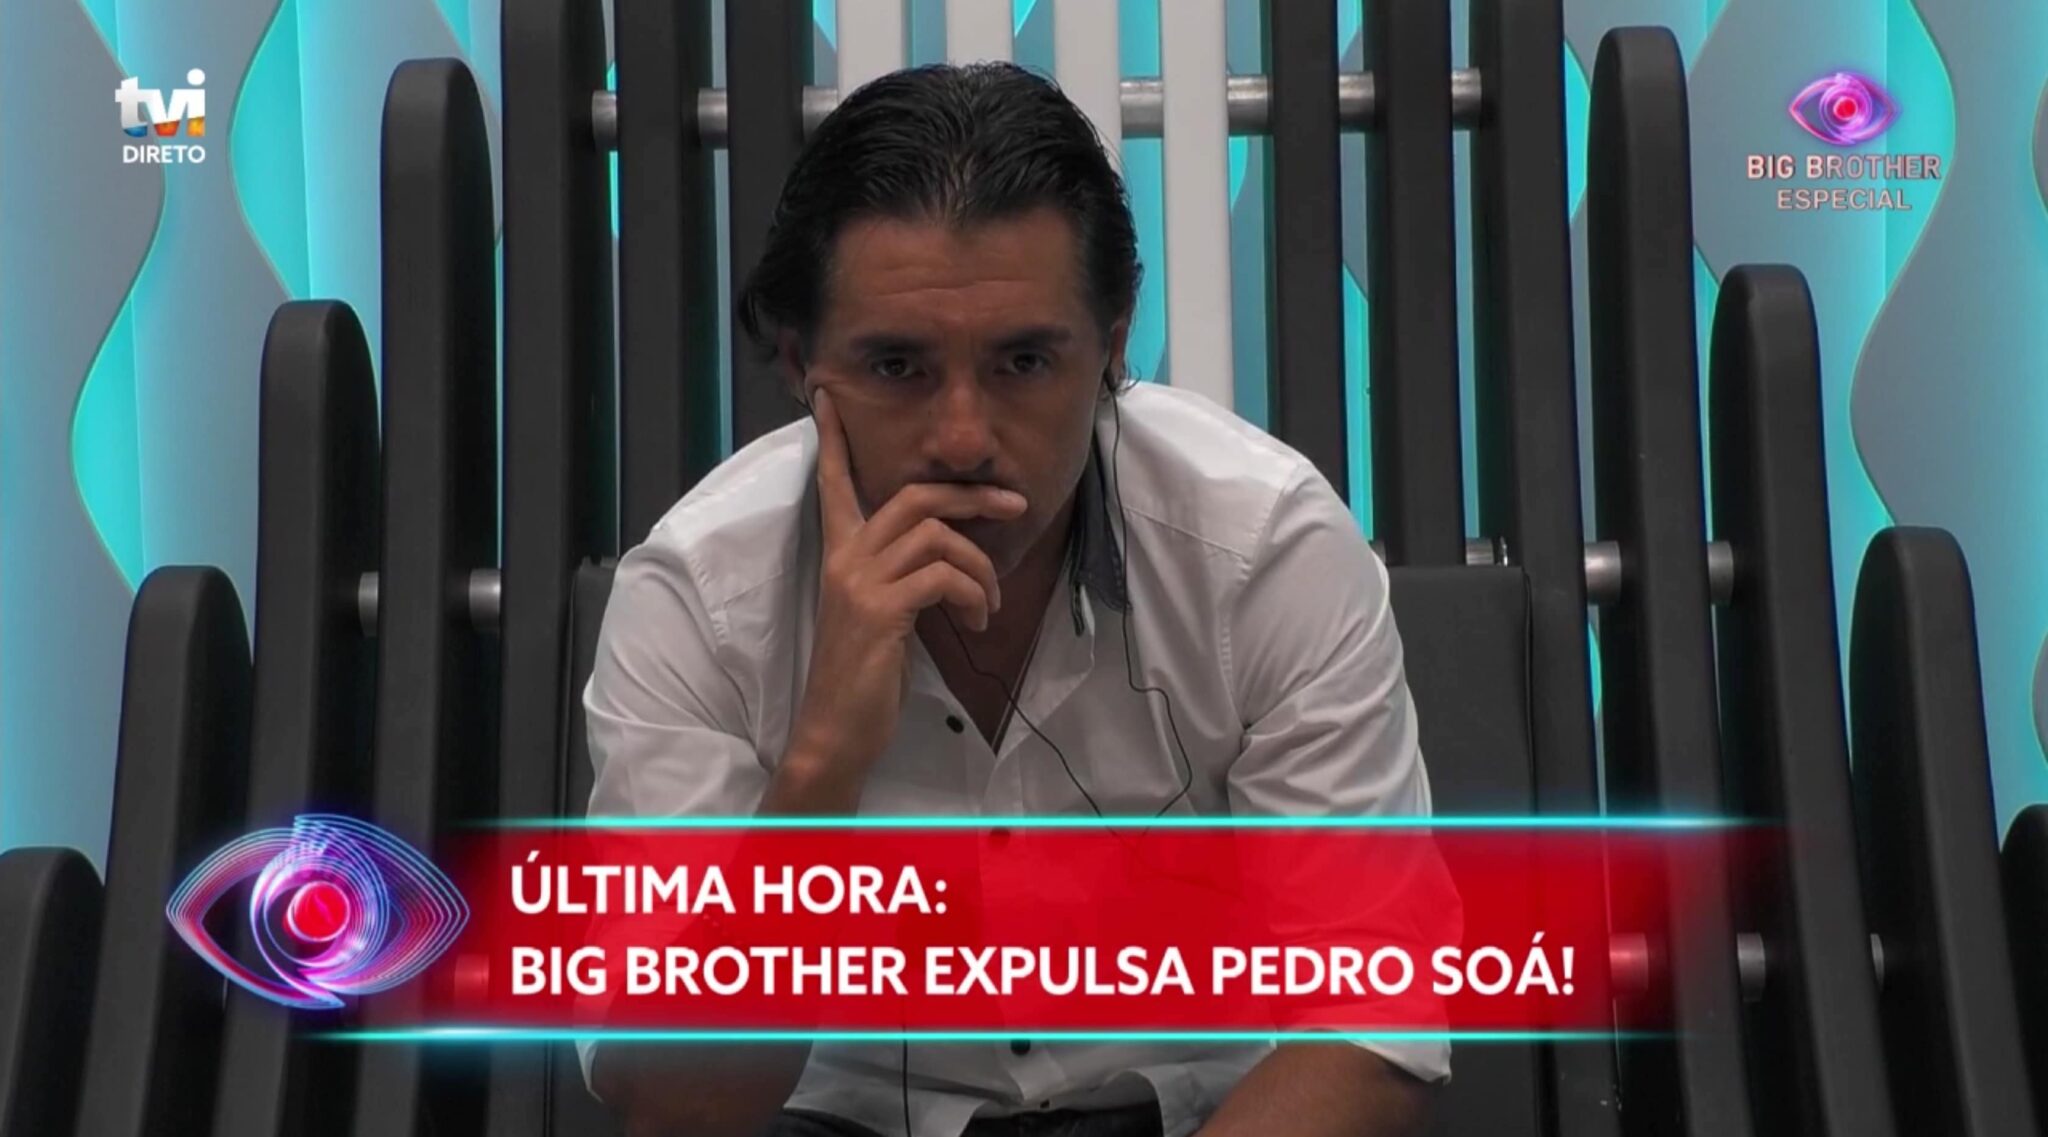 Big Brother Pedro Soa Expulso Scaled &Quot;A Decisão De Expulsar O Pedro Soá Foi Minha&Quot;, Diz Diretor Da Tvi